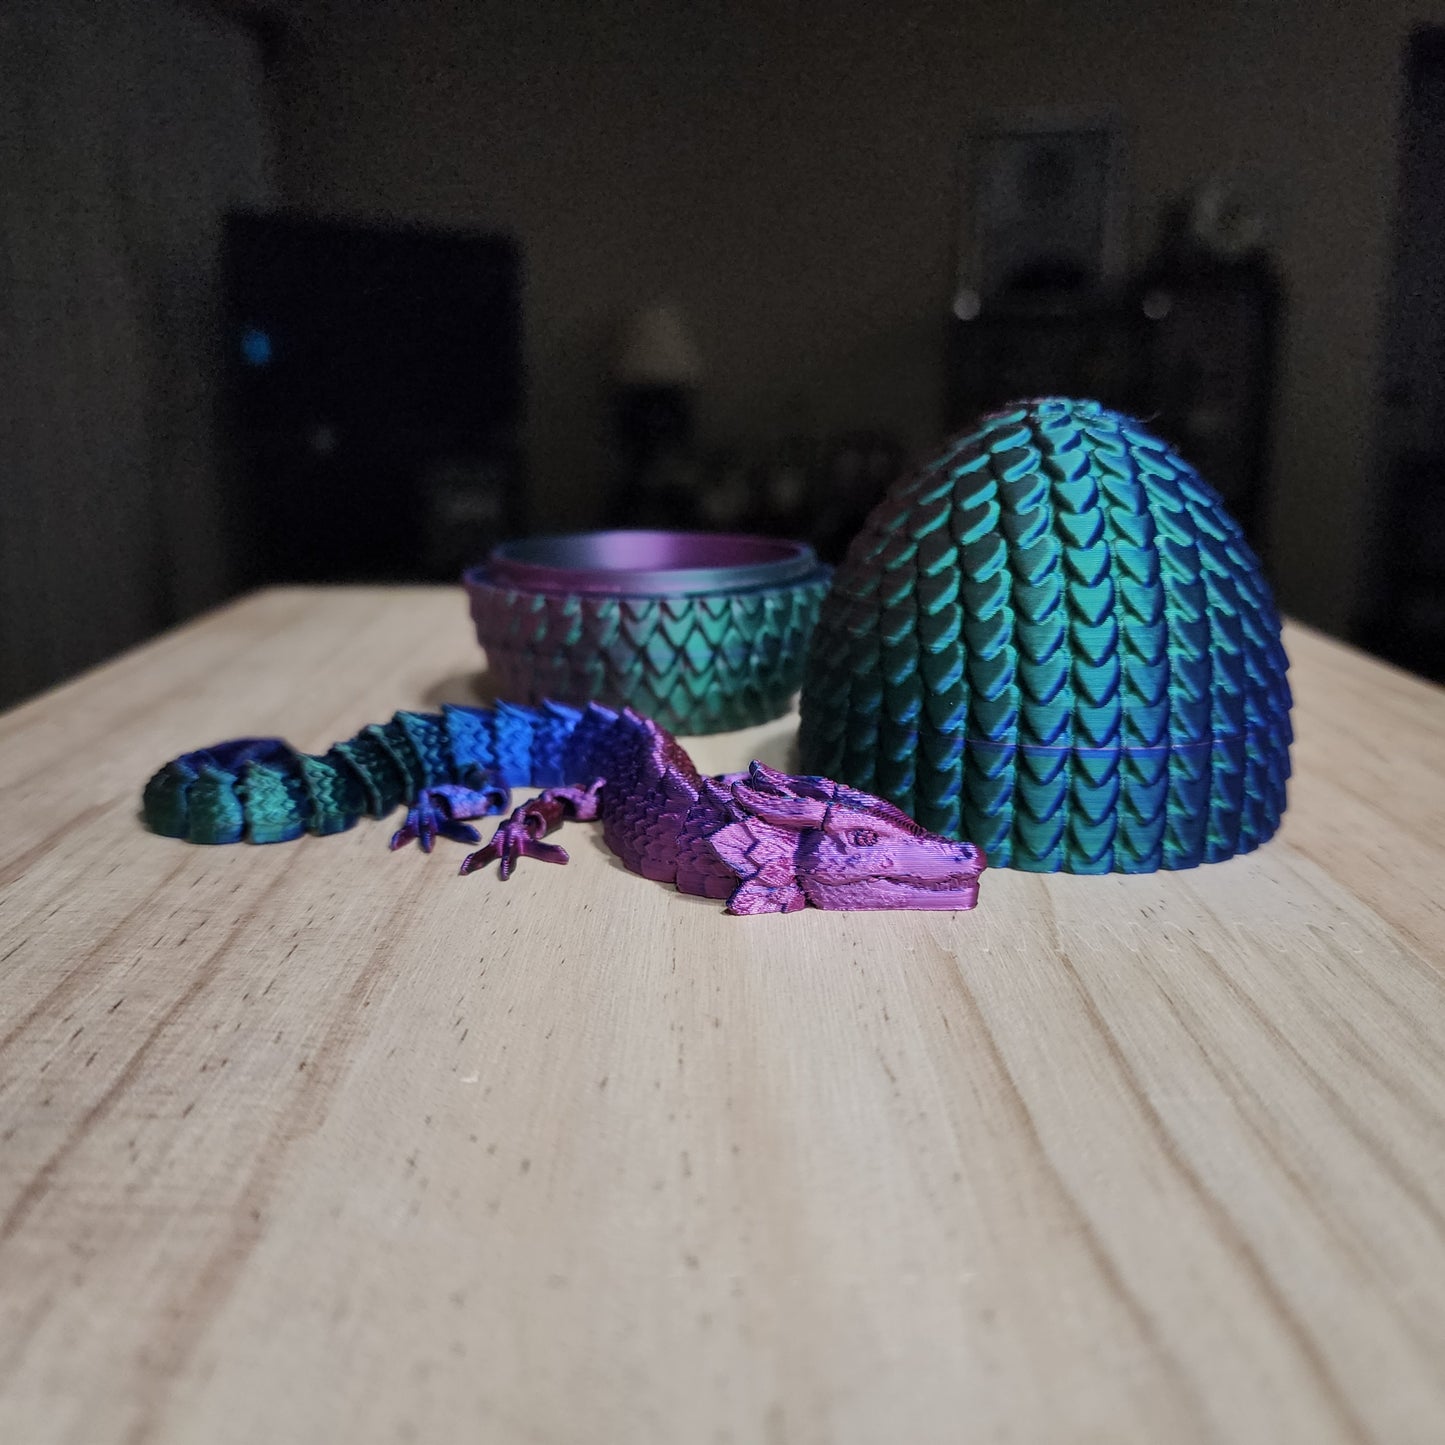 Mini Dragon and Crystal.